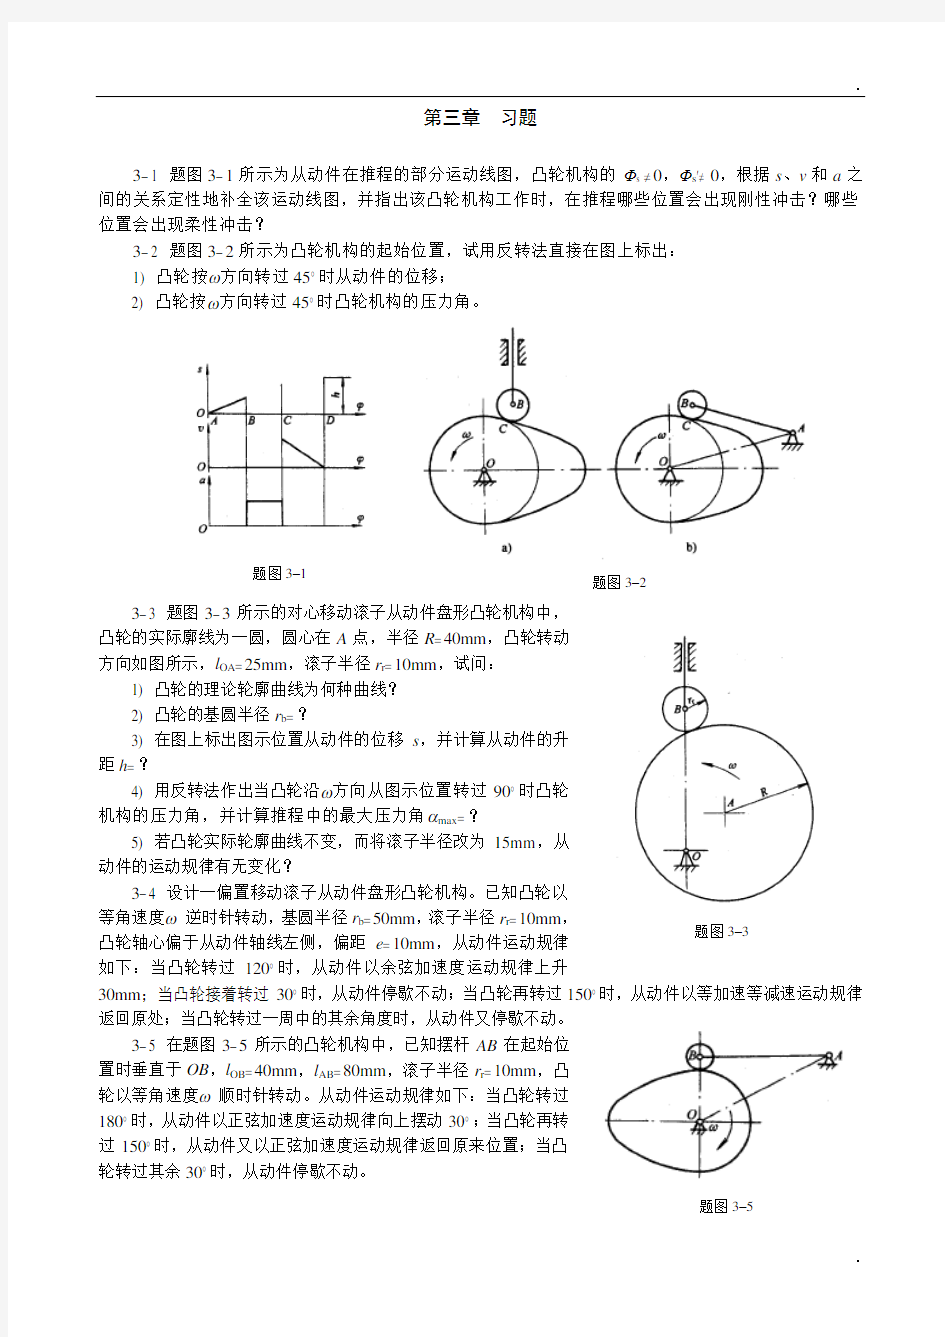 重庆大学机械原理章节习题库 第三章习题